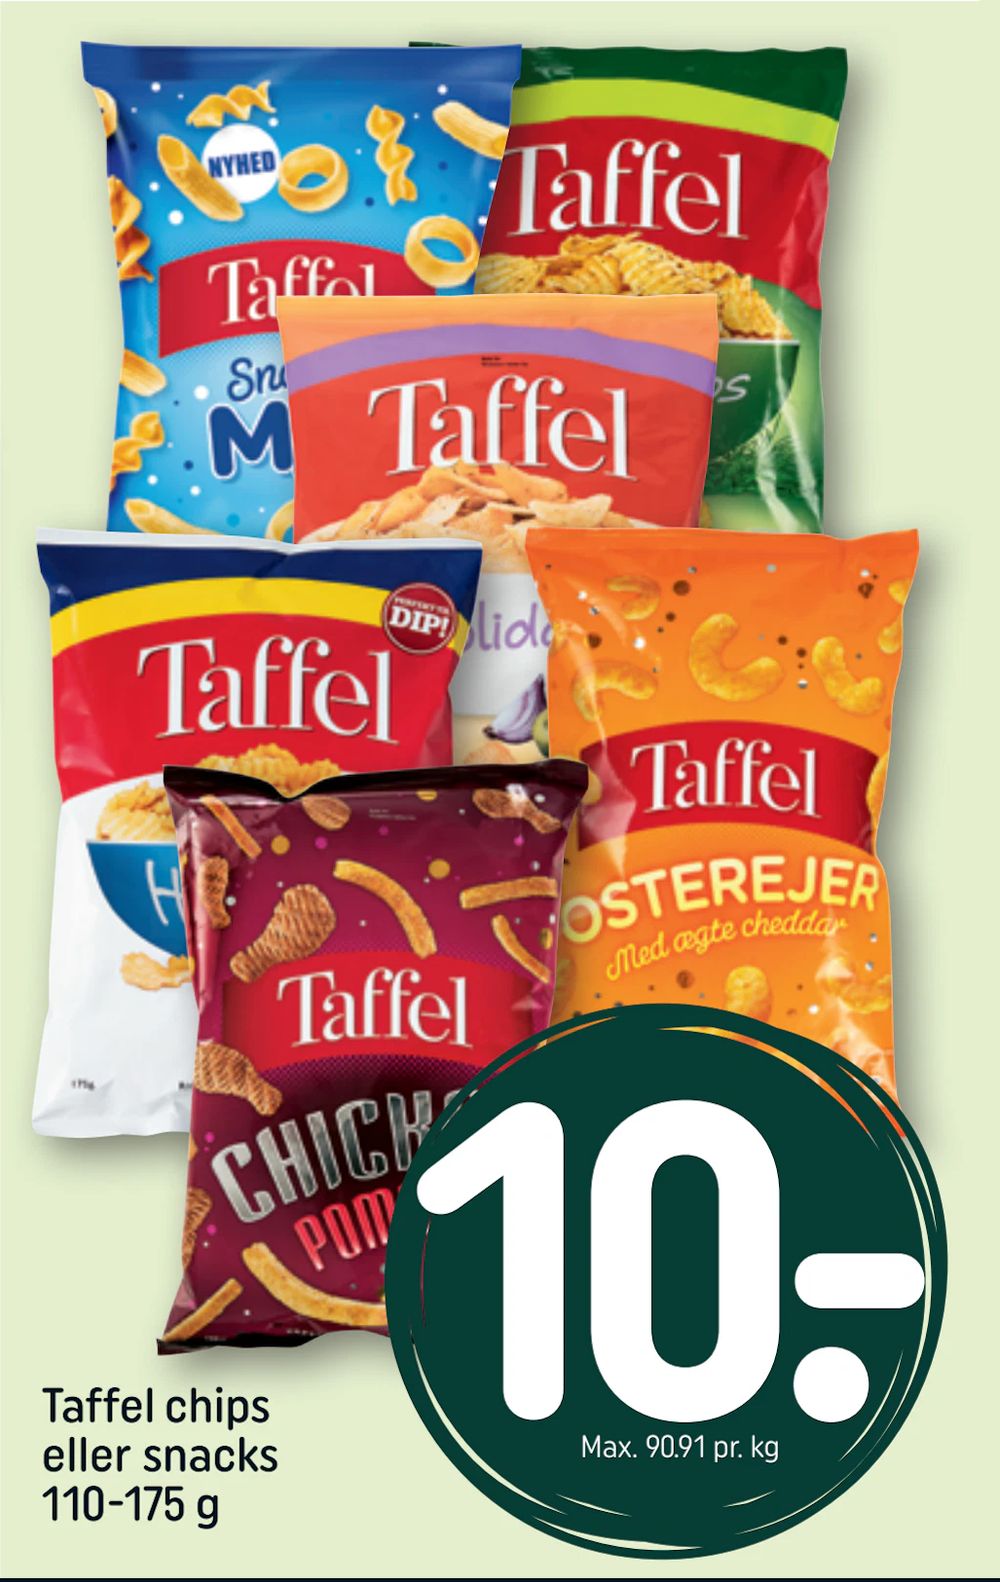 Tilbud på Taffel chips eller snacks 110-175 g fra REMA 1000 til 10 kr.